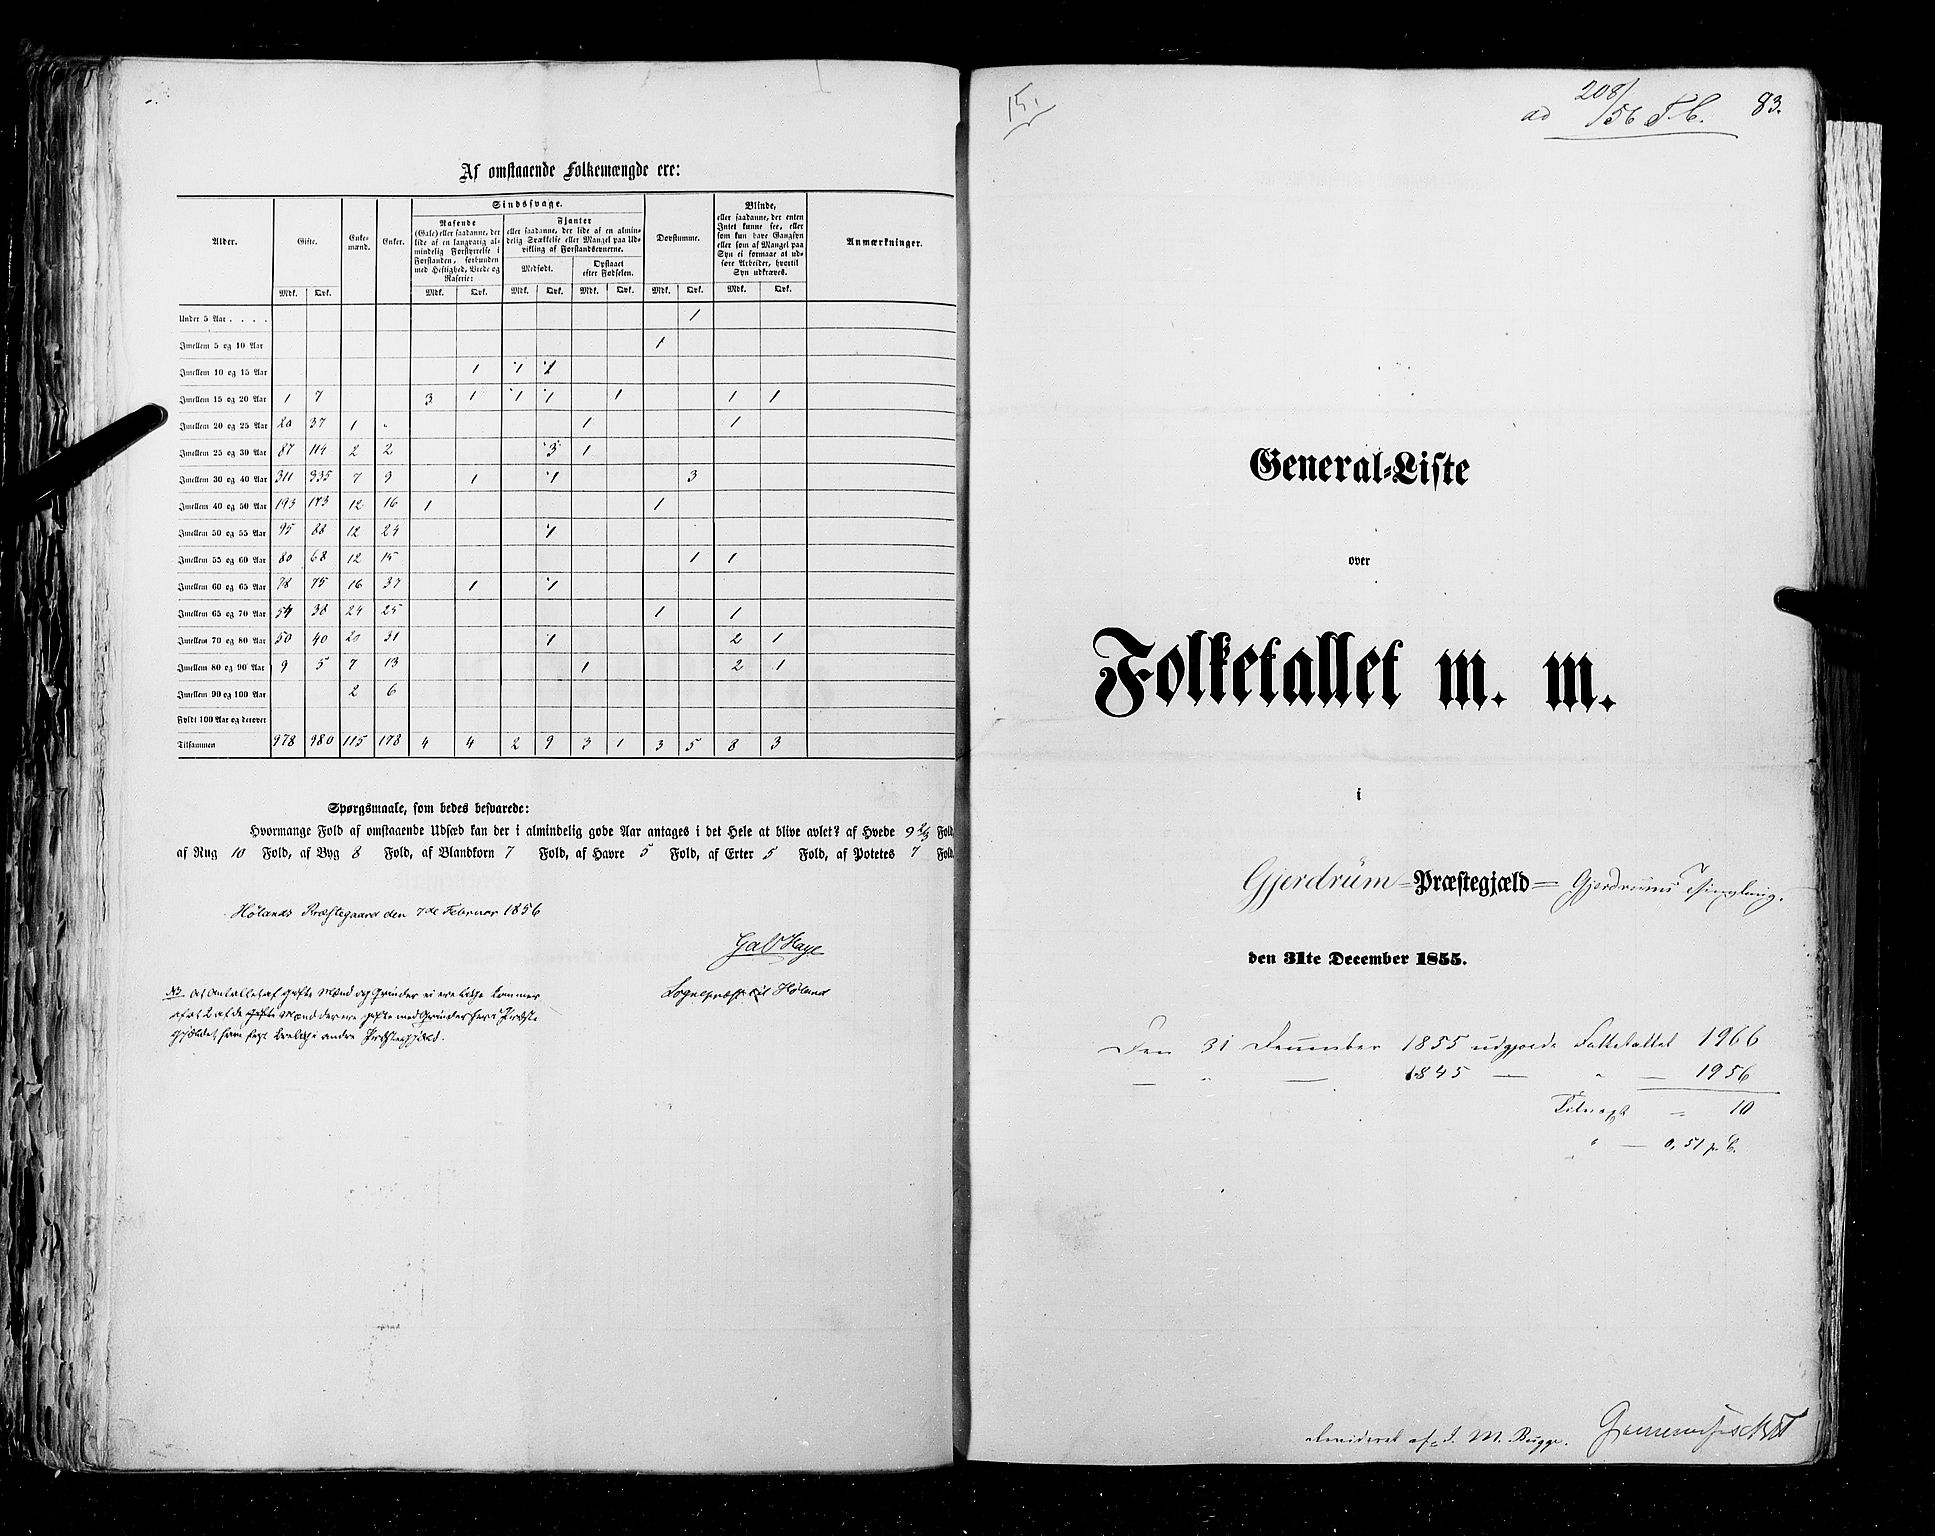 RA, Folketellingen 1855, bind 1: Akershus amt, Smålenenes amt og Hedemarken amt, 1855, s. 83